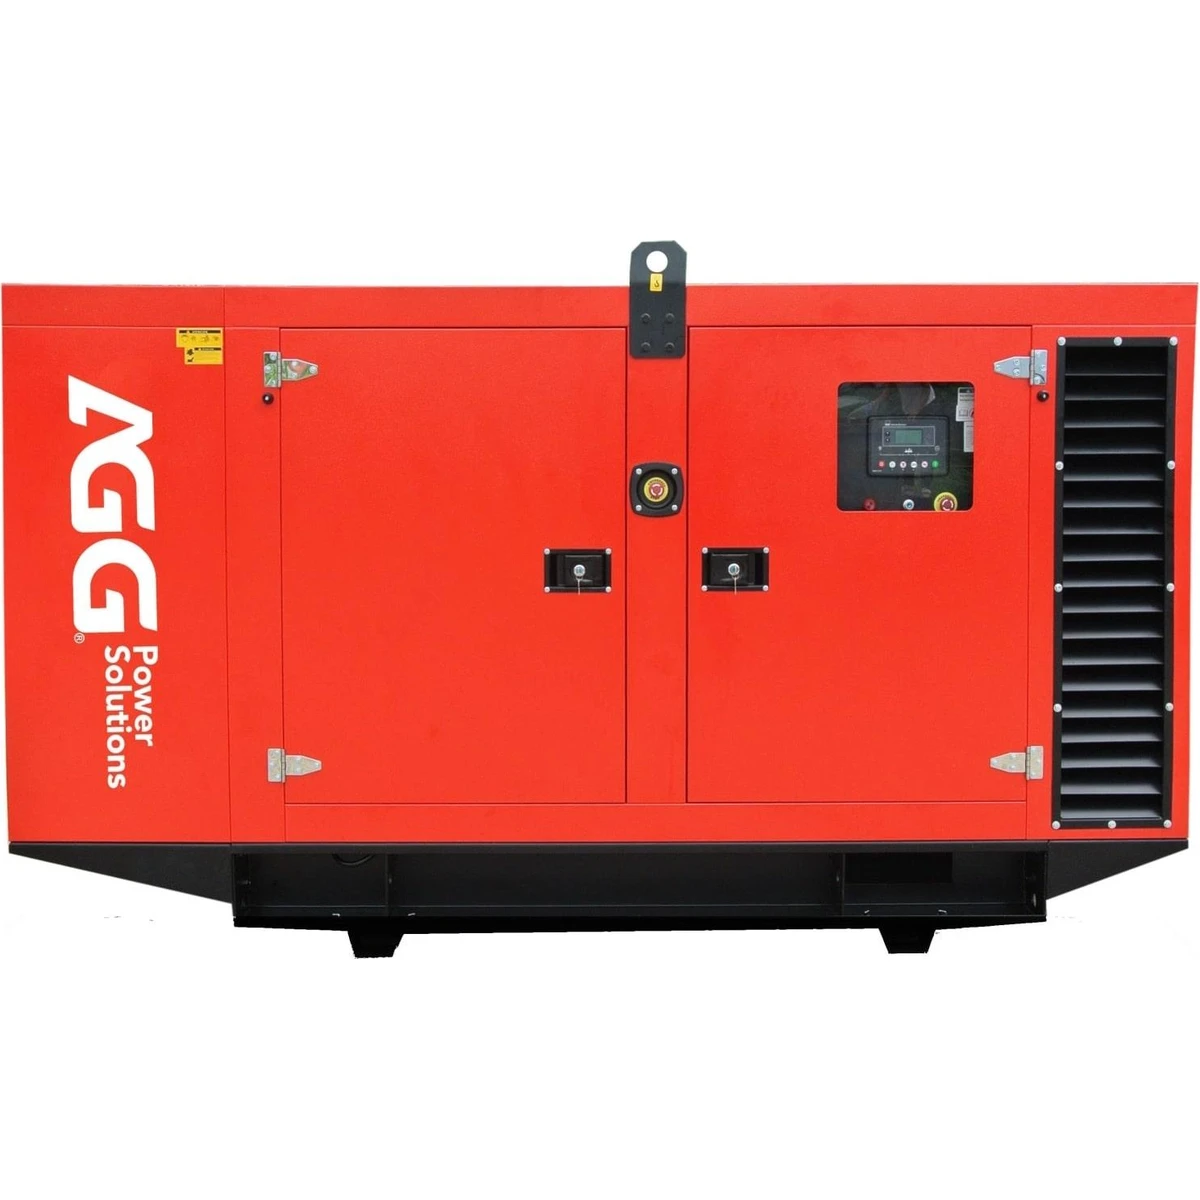 Дизель генератор AGG DE55D5 в кожухе